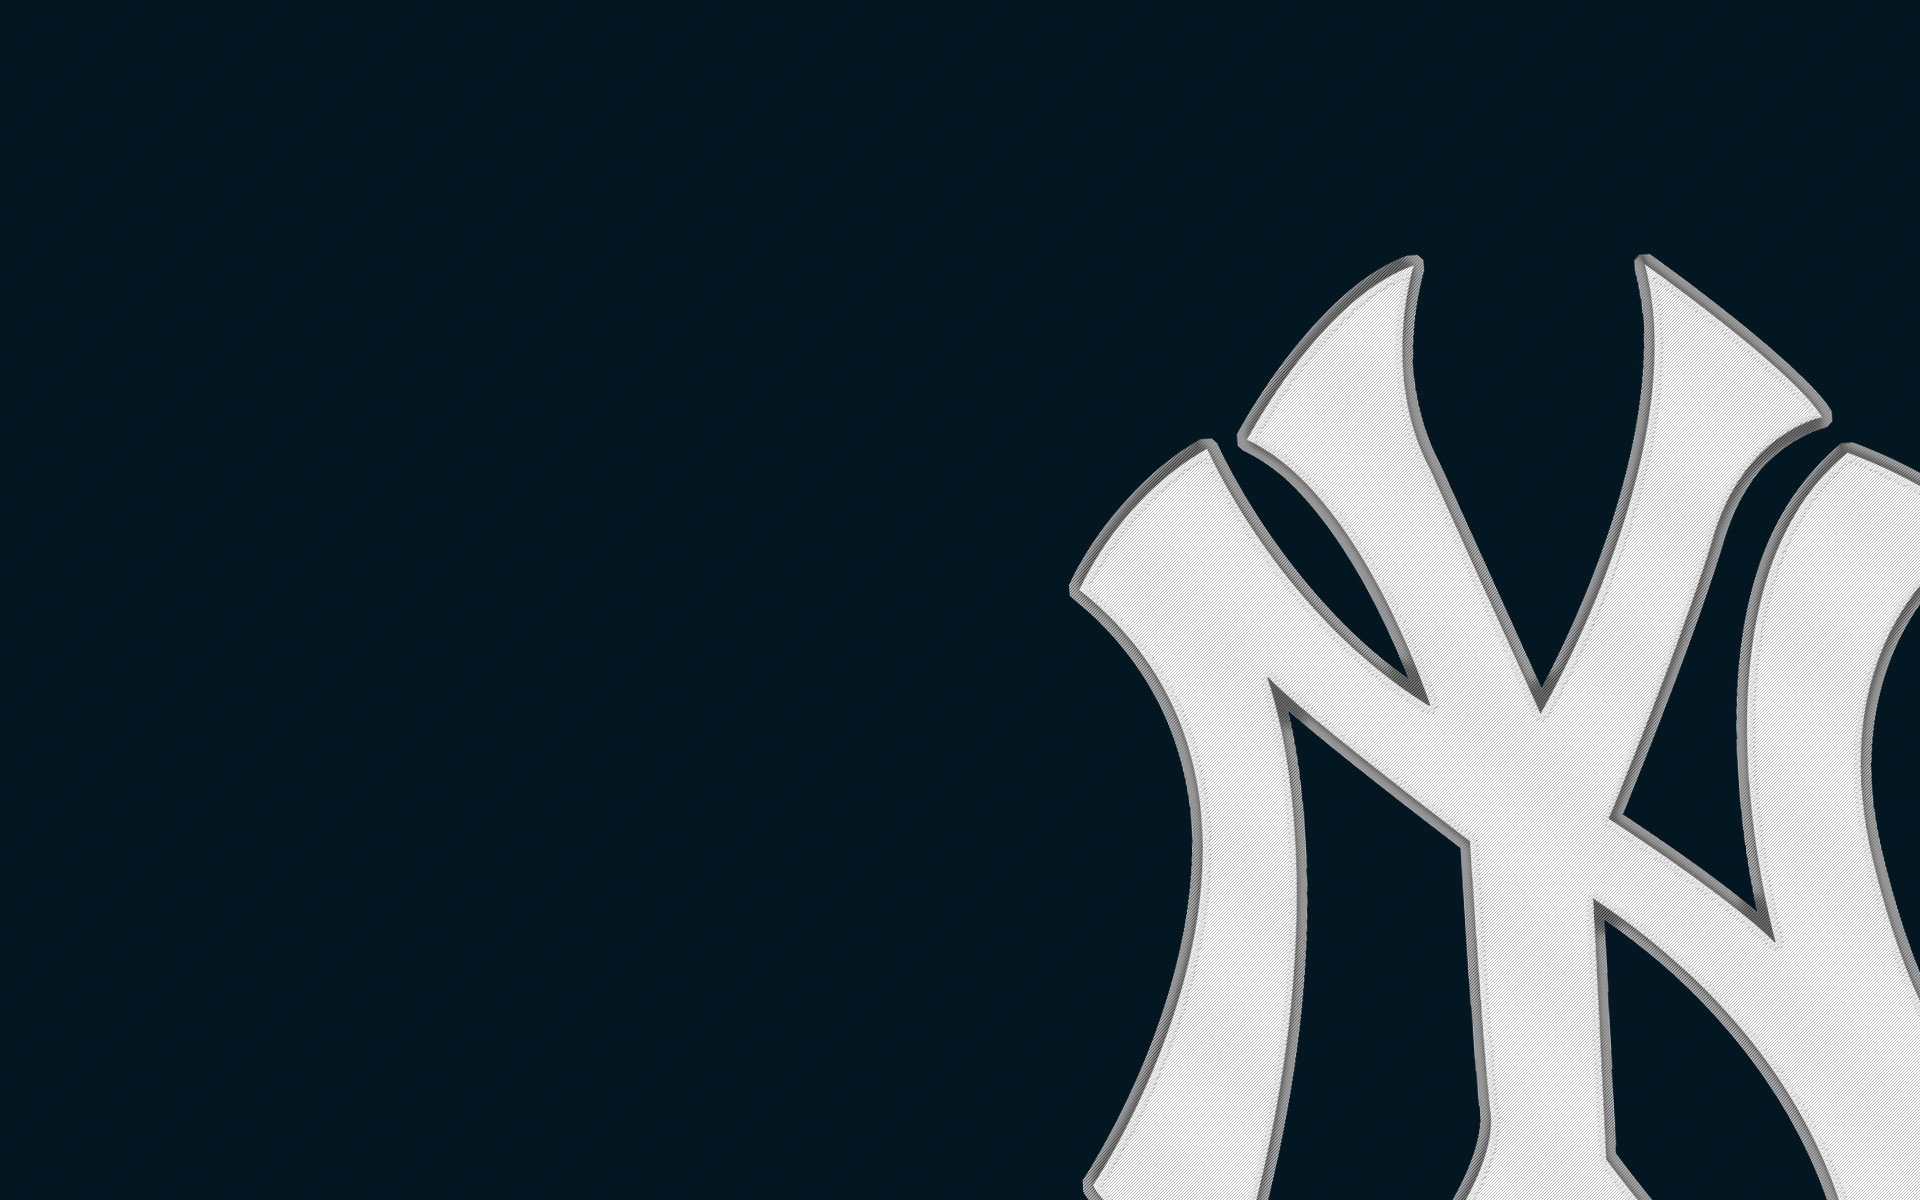 Yankees Wallpapers  New York Yankees